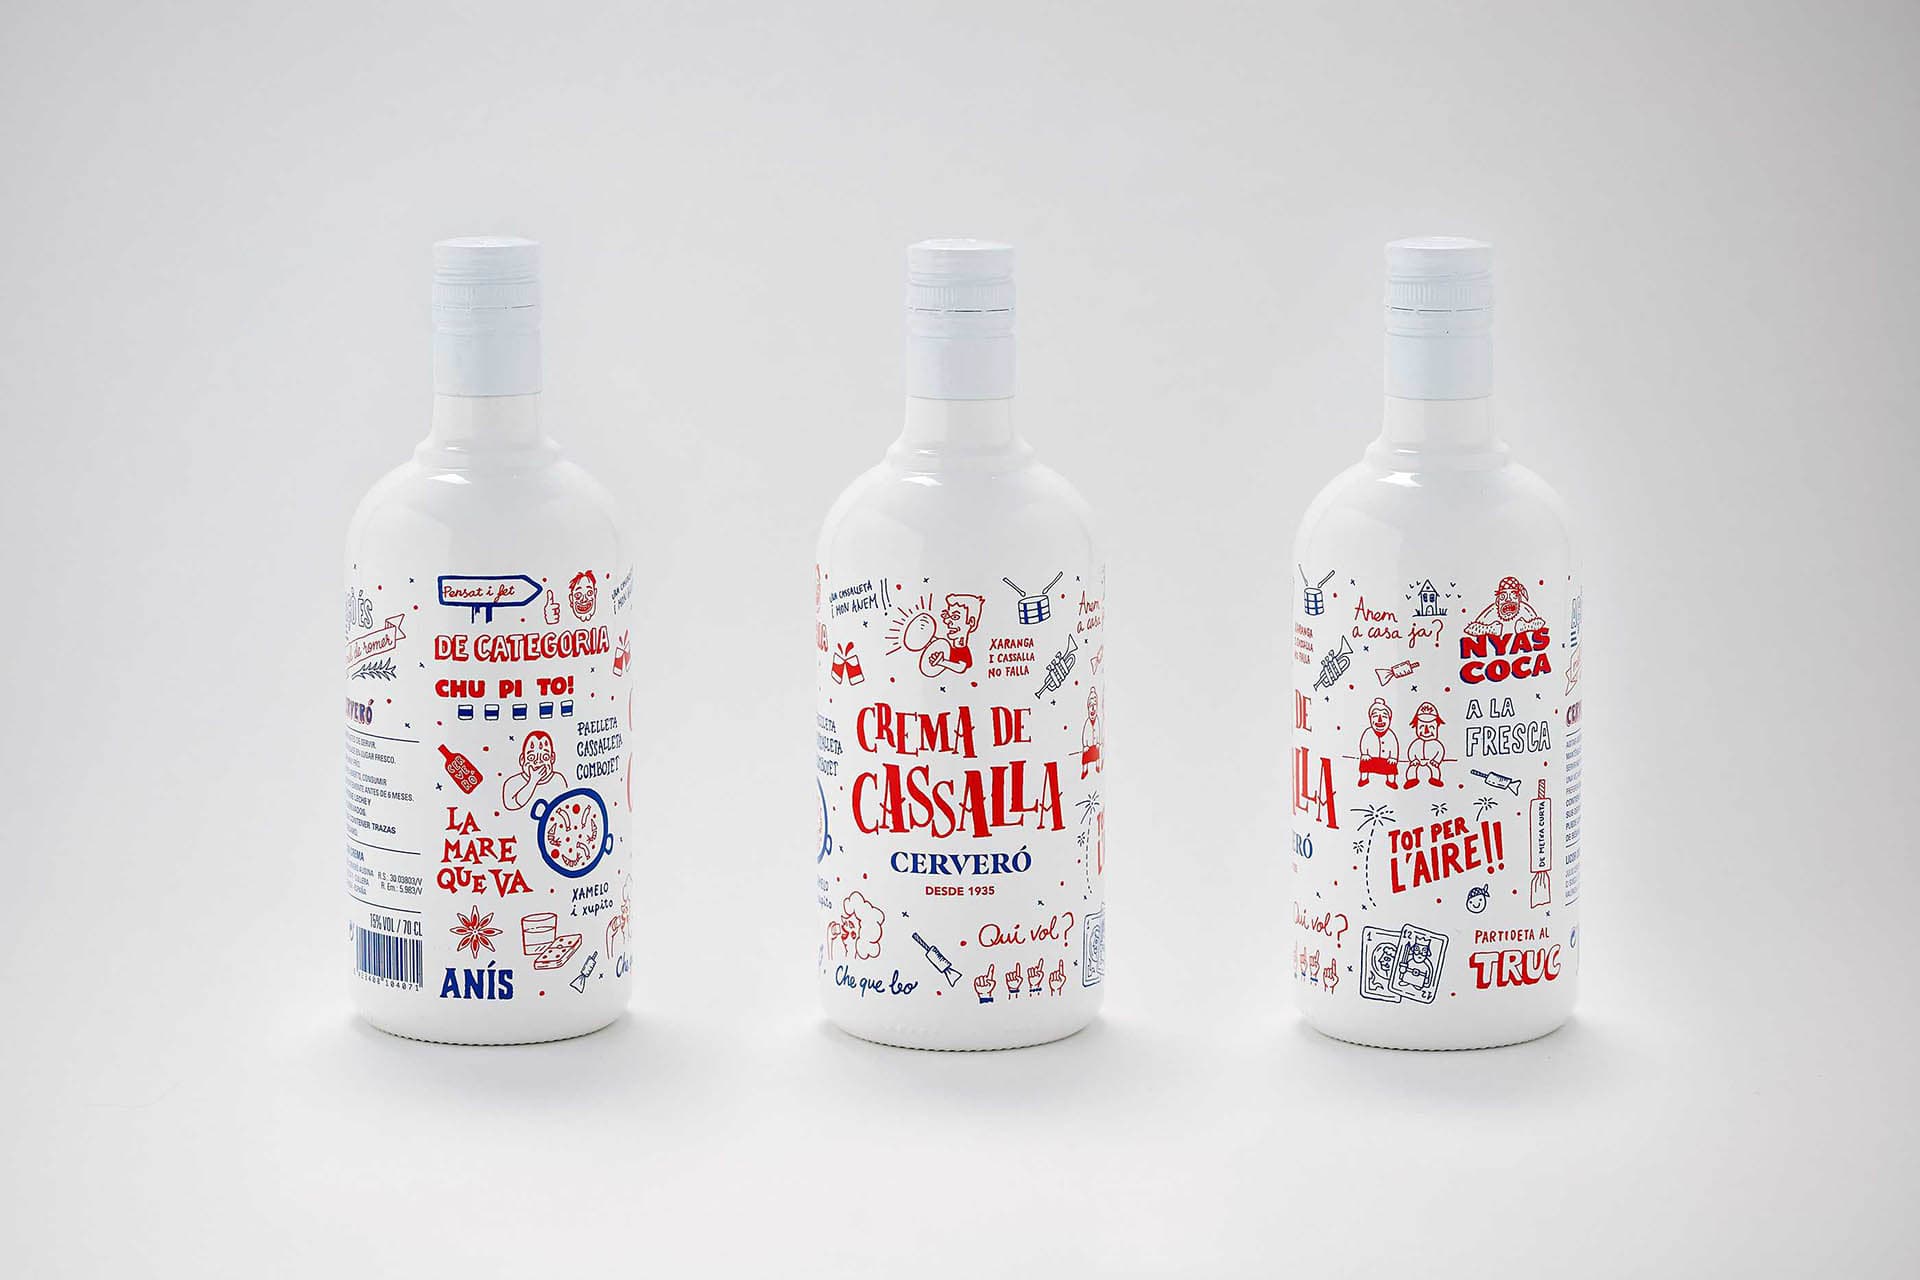 Diseño de Branding y Packaging para crema de cassalla Cervero con motivos valencianos